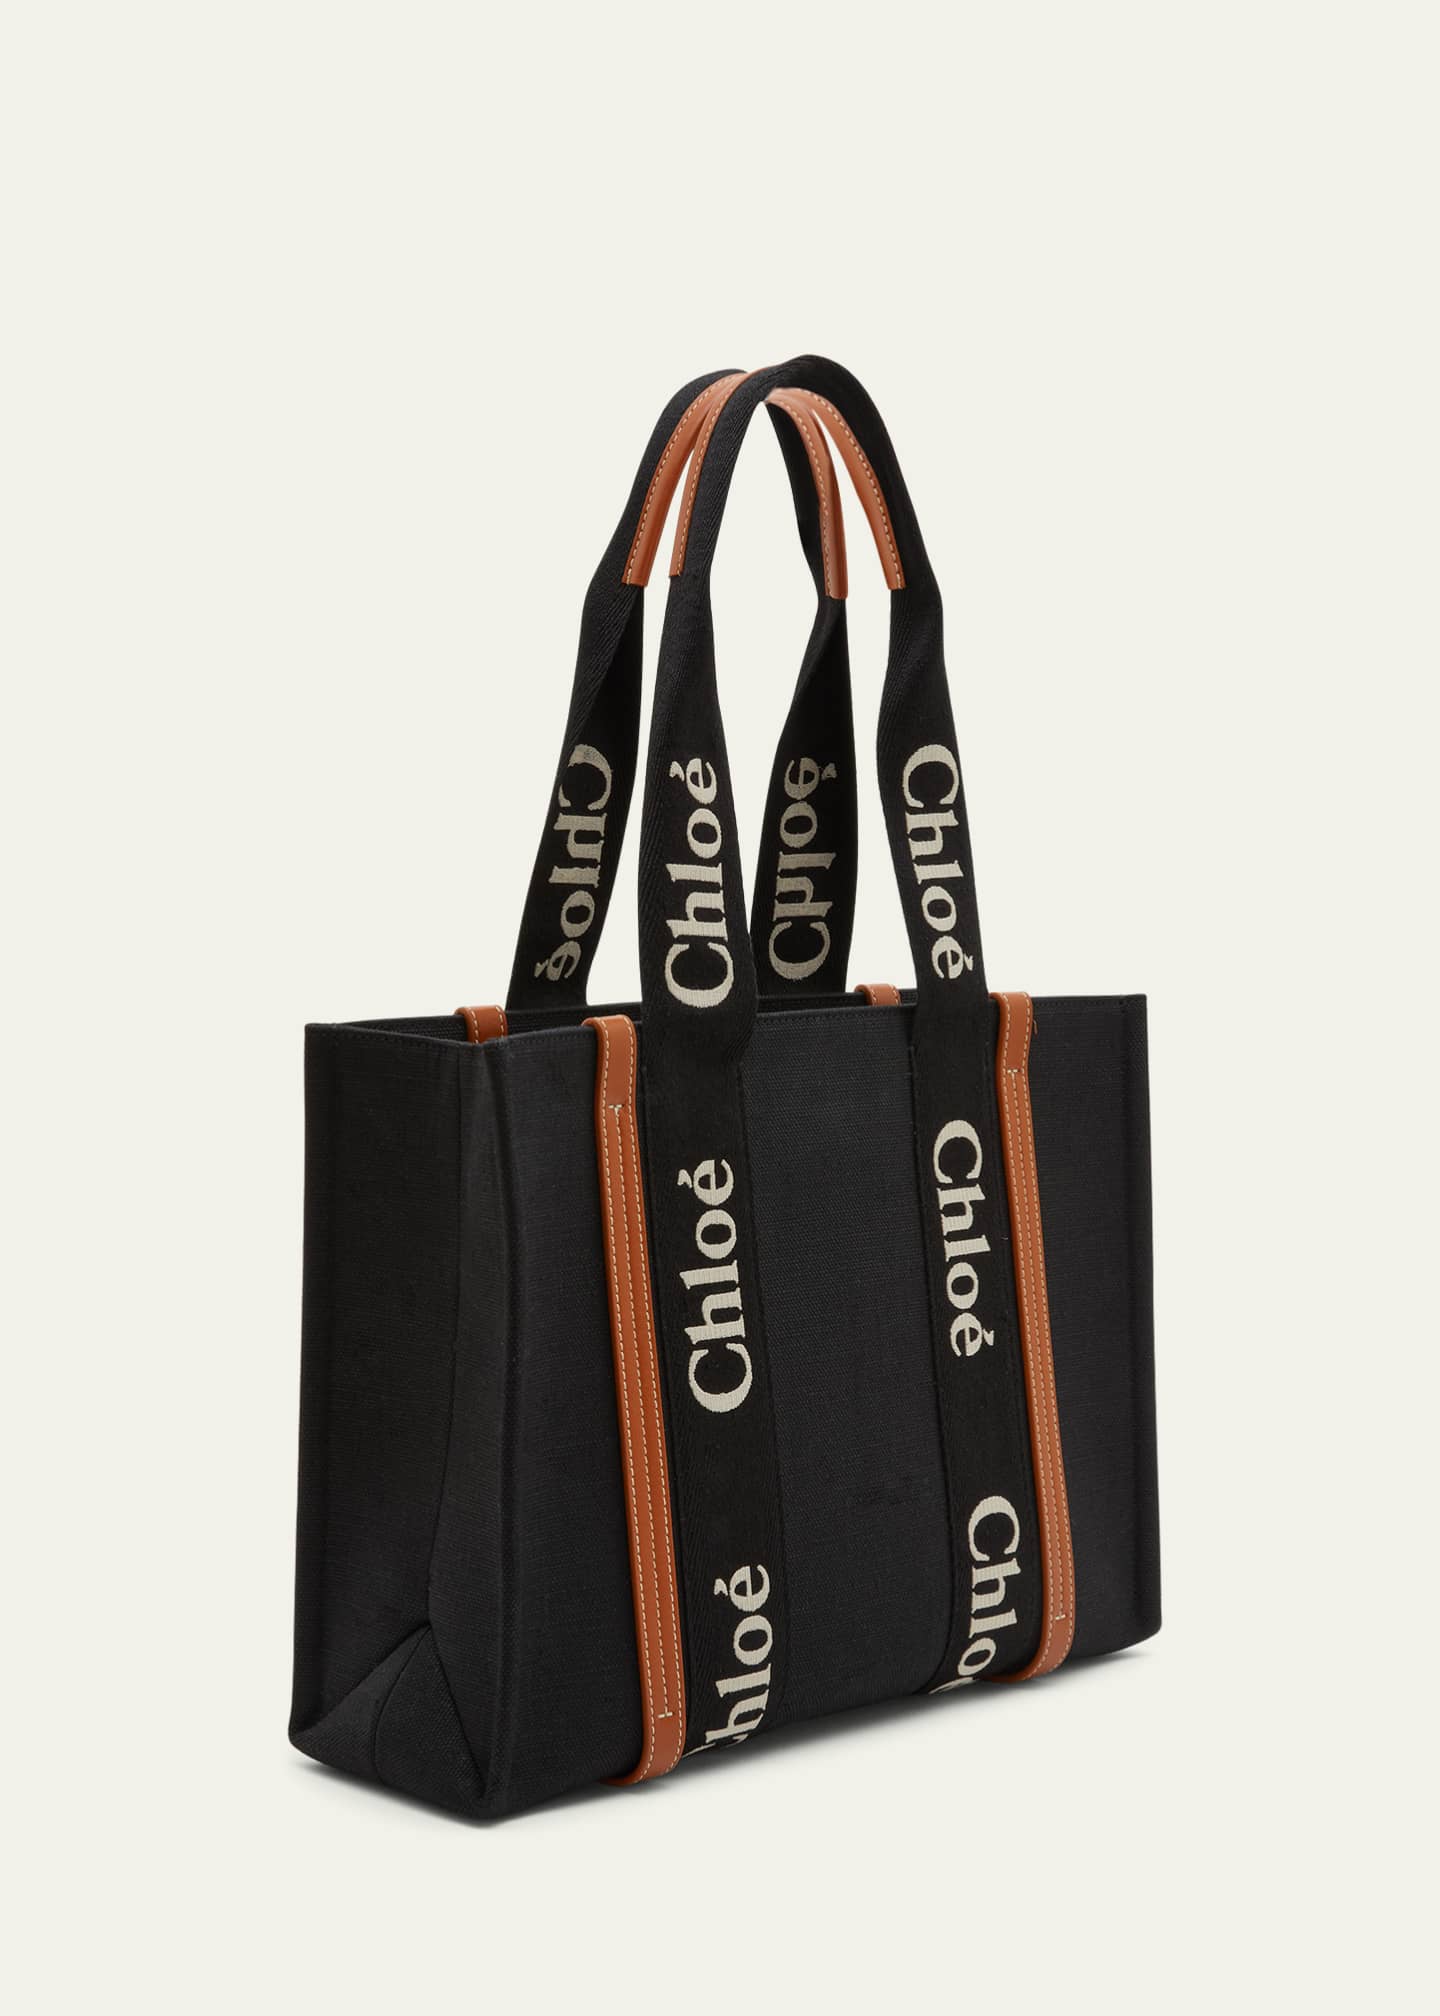 Chloe Woody Medium Tote Bag in Linen - Bergdorf Goodman